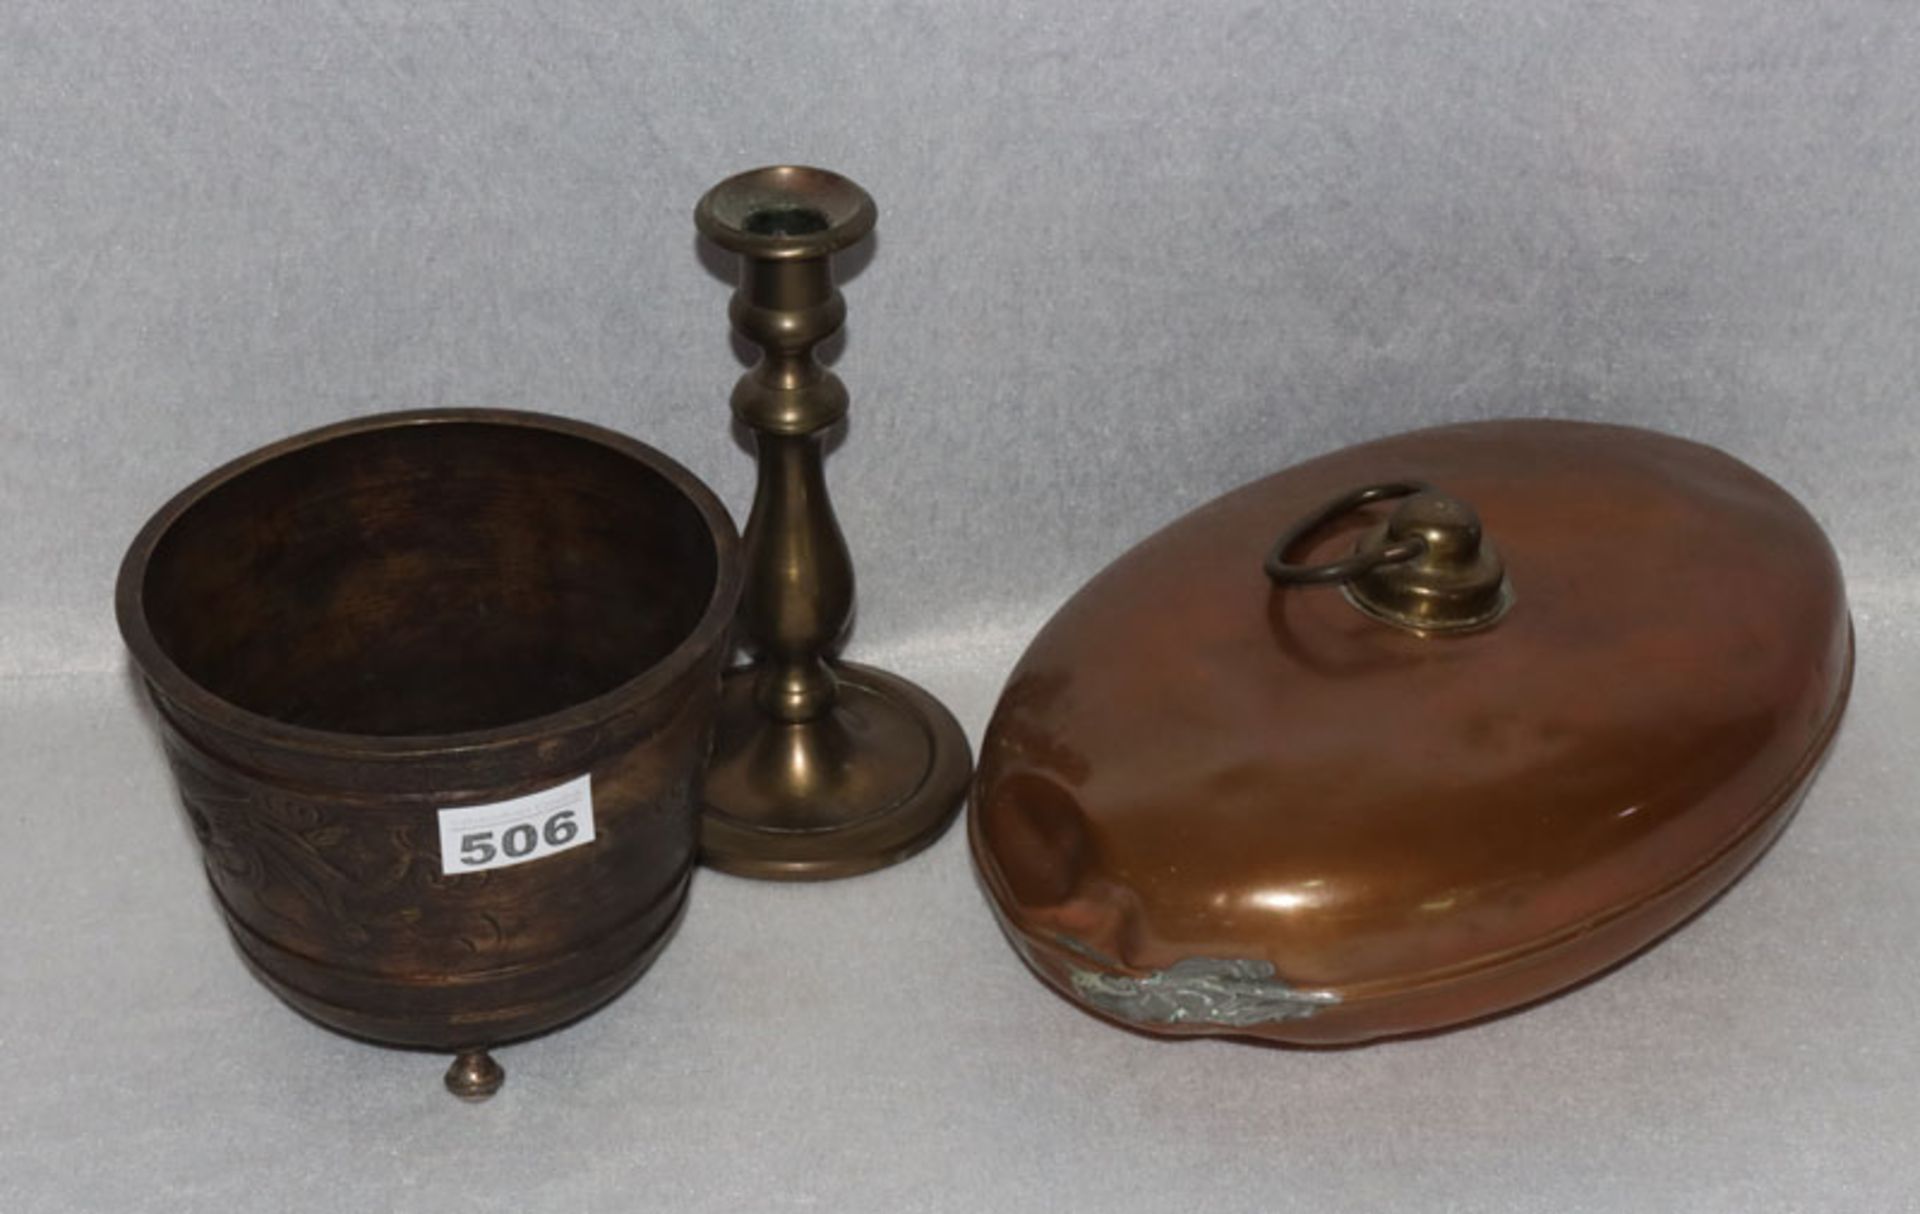 Konvolut: Kupfer Wärmflasche, H 12 cm, L 29 cm, B 20 cm, und Metall Kerzenleuchter, H 19 cm, und